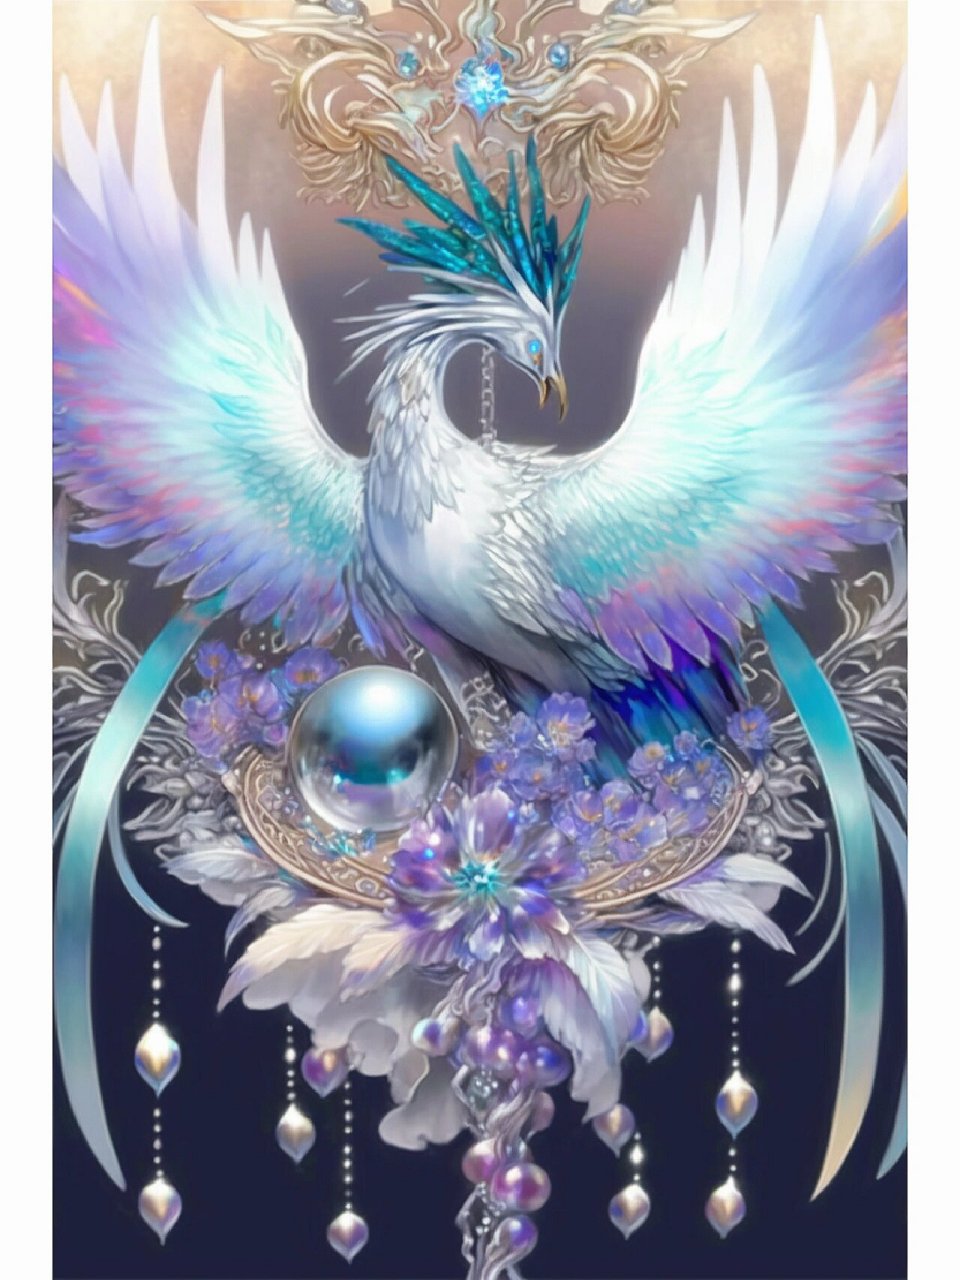 凤凰神鸟系列插画,鸟系拟人 凤凰是一种传说中的神鸟,它被认为是不朽